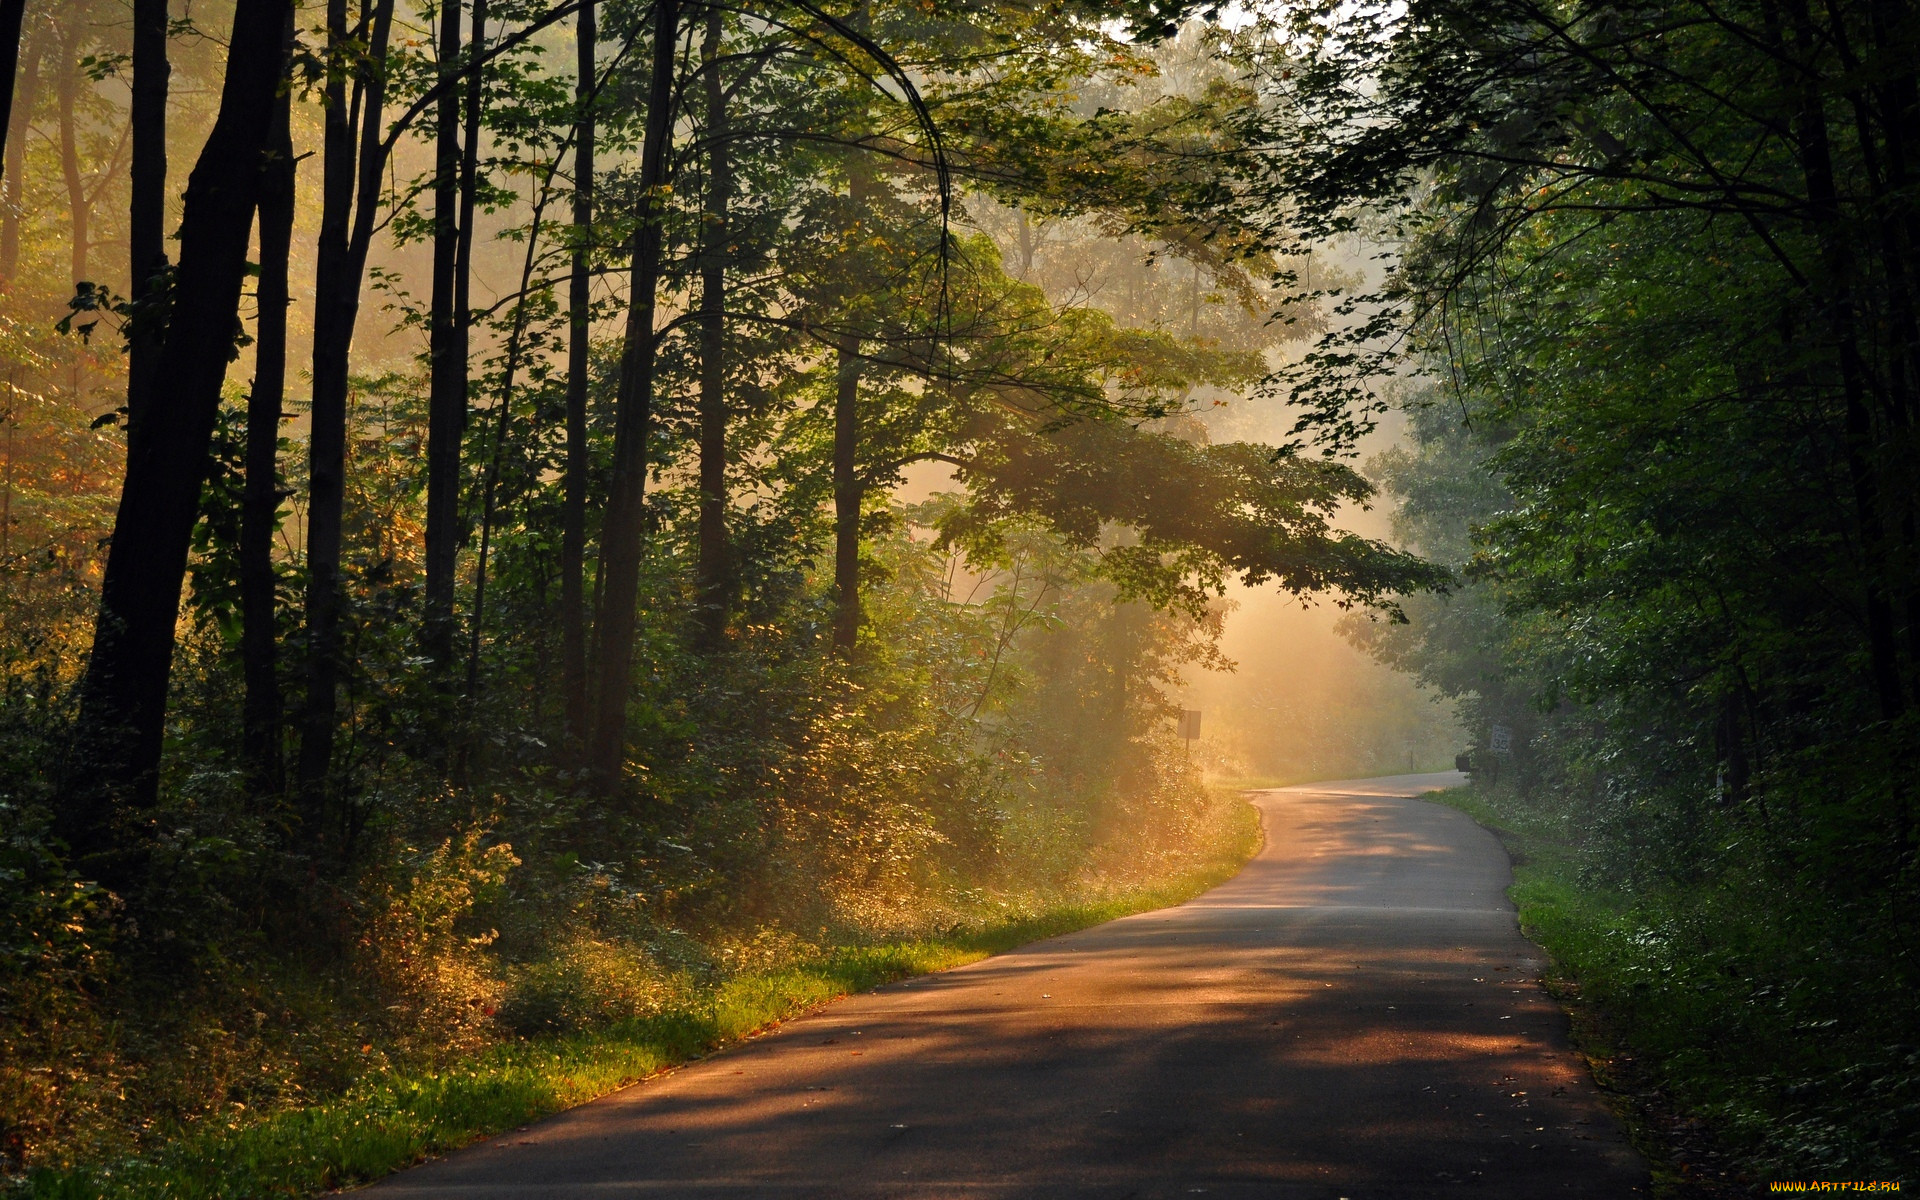 Дорога ведет в лес. Дорога в лесу. Лесная дорога. Тропинка в лесу. Пейзаж с дорогой.